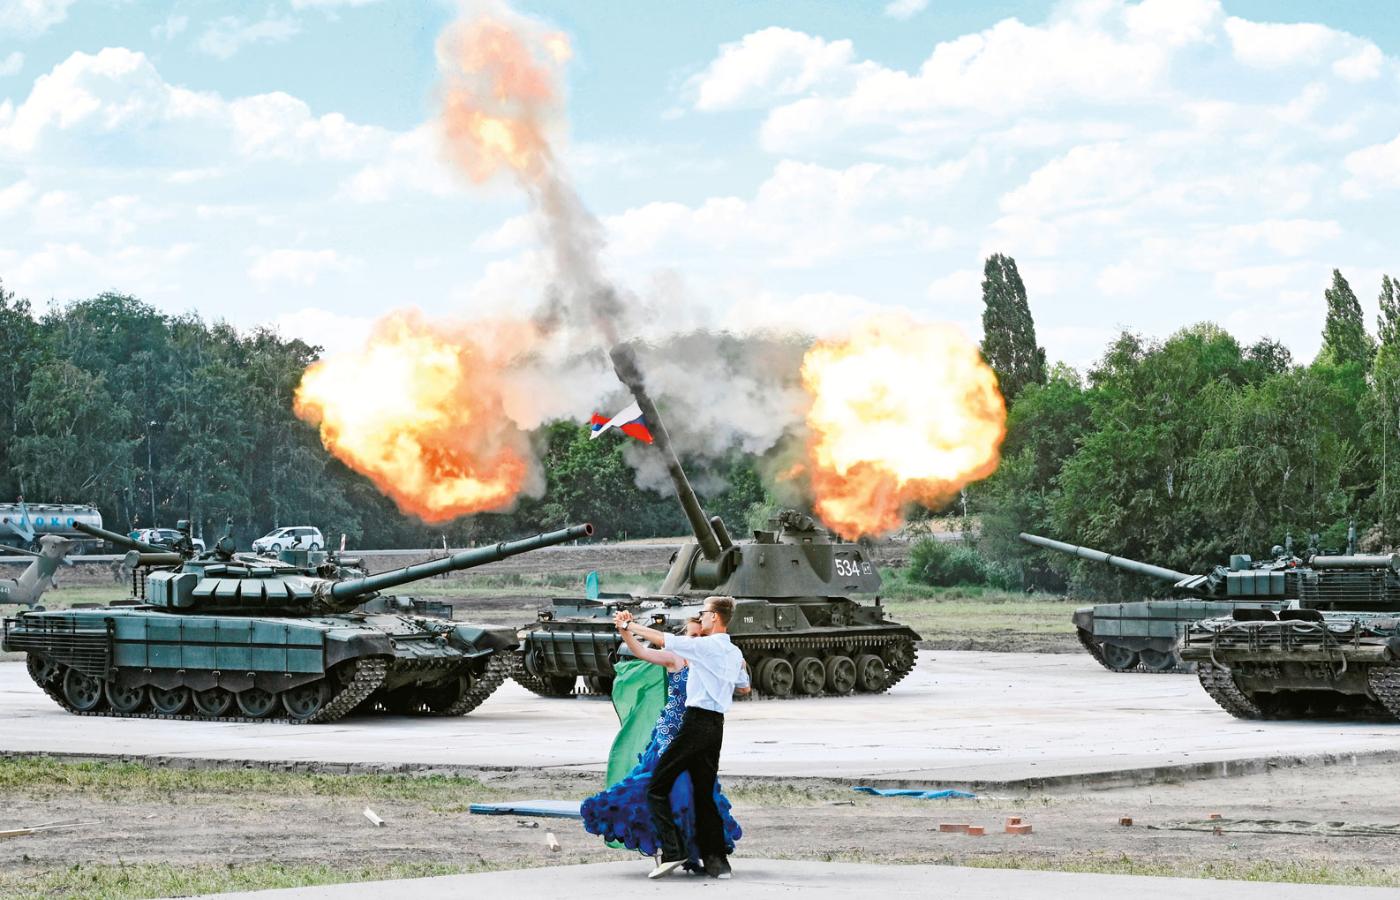 Próba przed pokazem podczas Międzynarodowego Forum Wojskowo-Technicznego Armia 2019 w okolicach Rostowa.